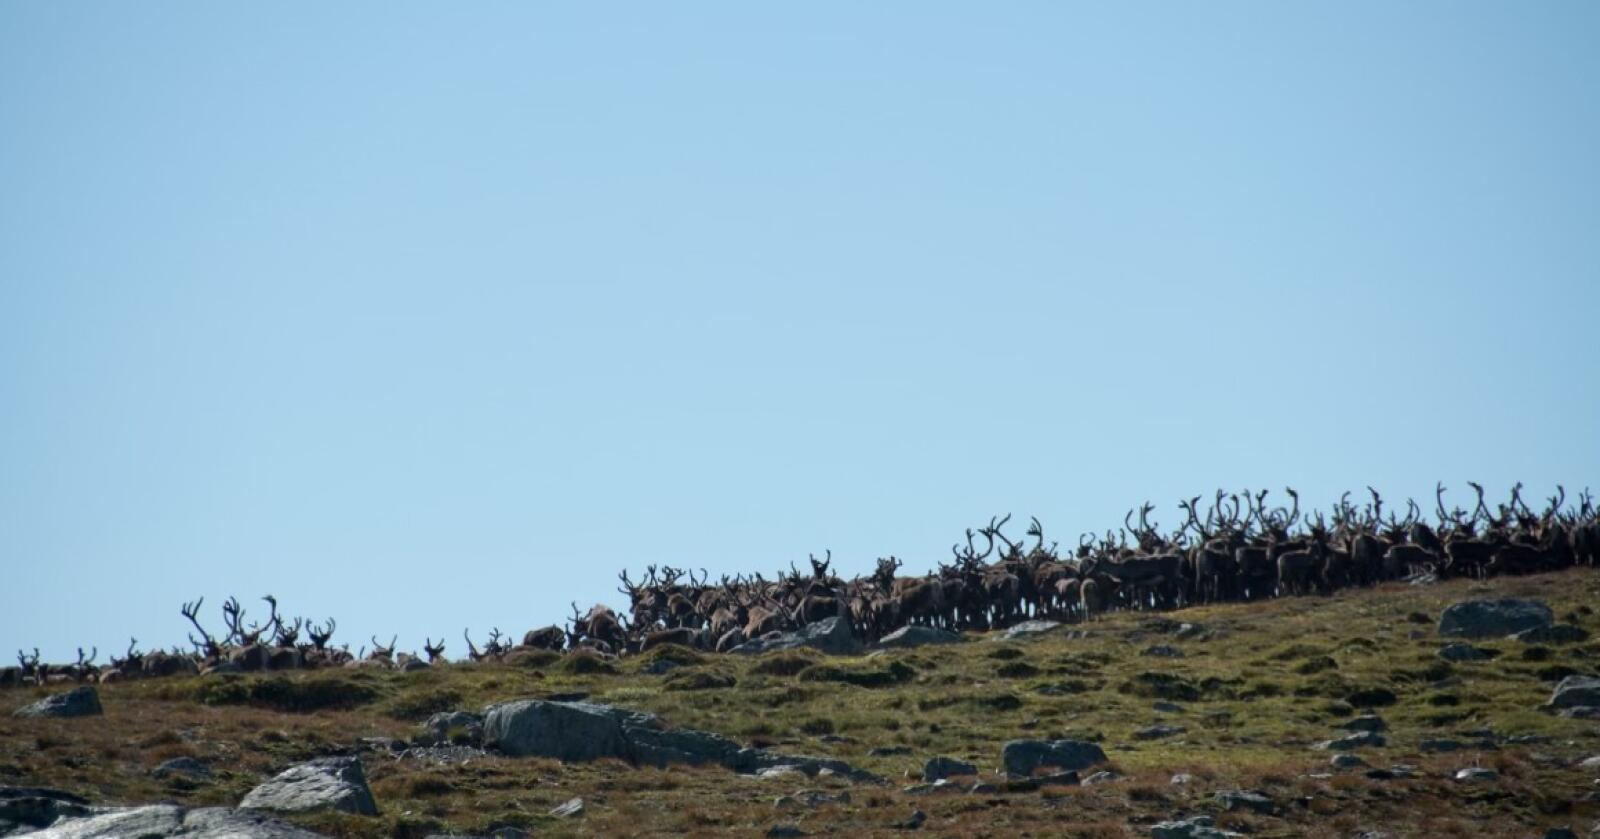 711 villrein på Hardangervidda er så langt i år testa for skrantesjuke. Foto: Gunnar Hansli